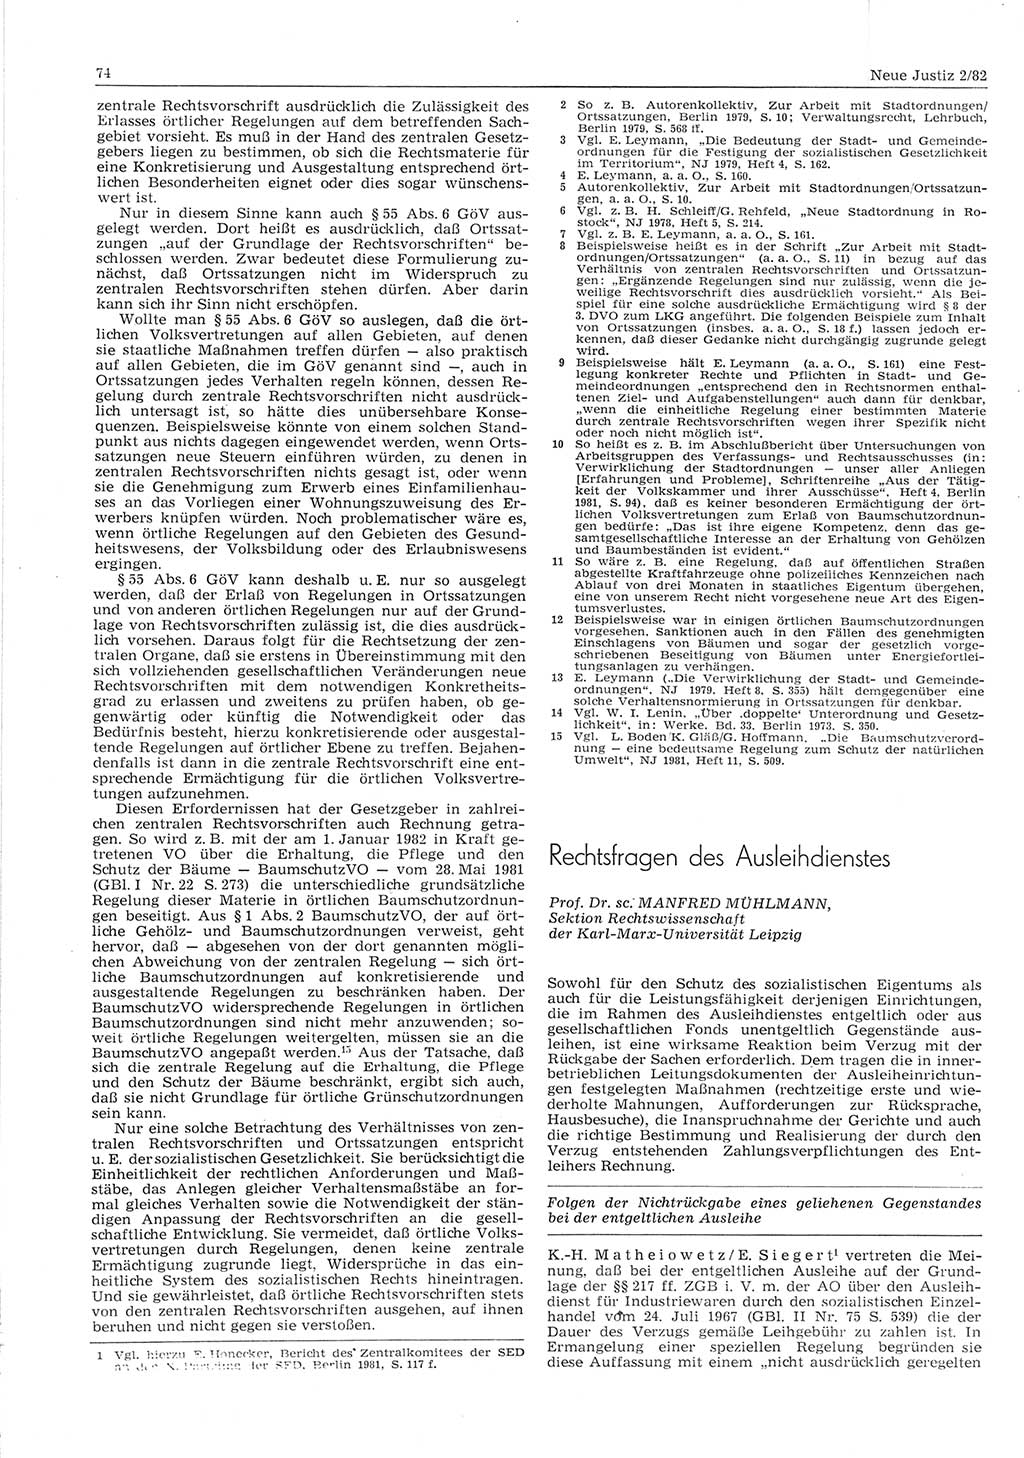 Neue Justiz (NJ), Zeitschrift für sozialistisches Recht und Gesetzlichkeit [Deutsche Demokratische Republik (DDR)], 36. Jahrgang 1982, Seite 74 (NJ DDR 1982, S. 74)